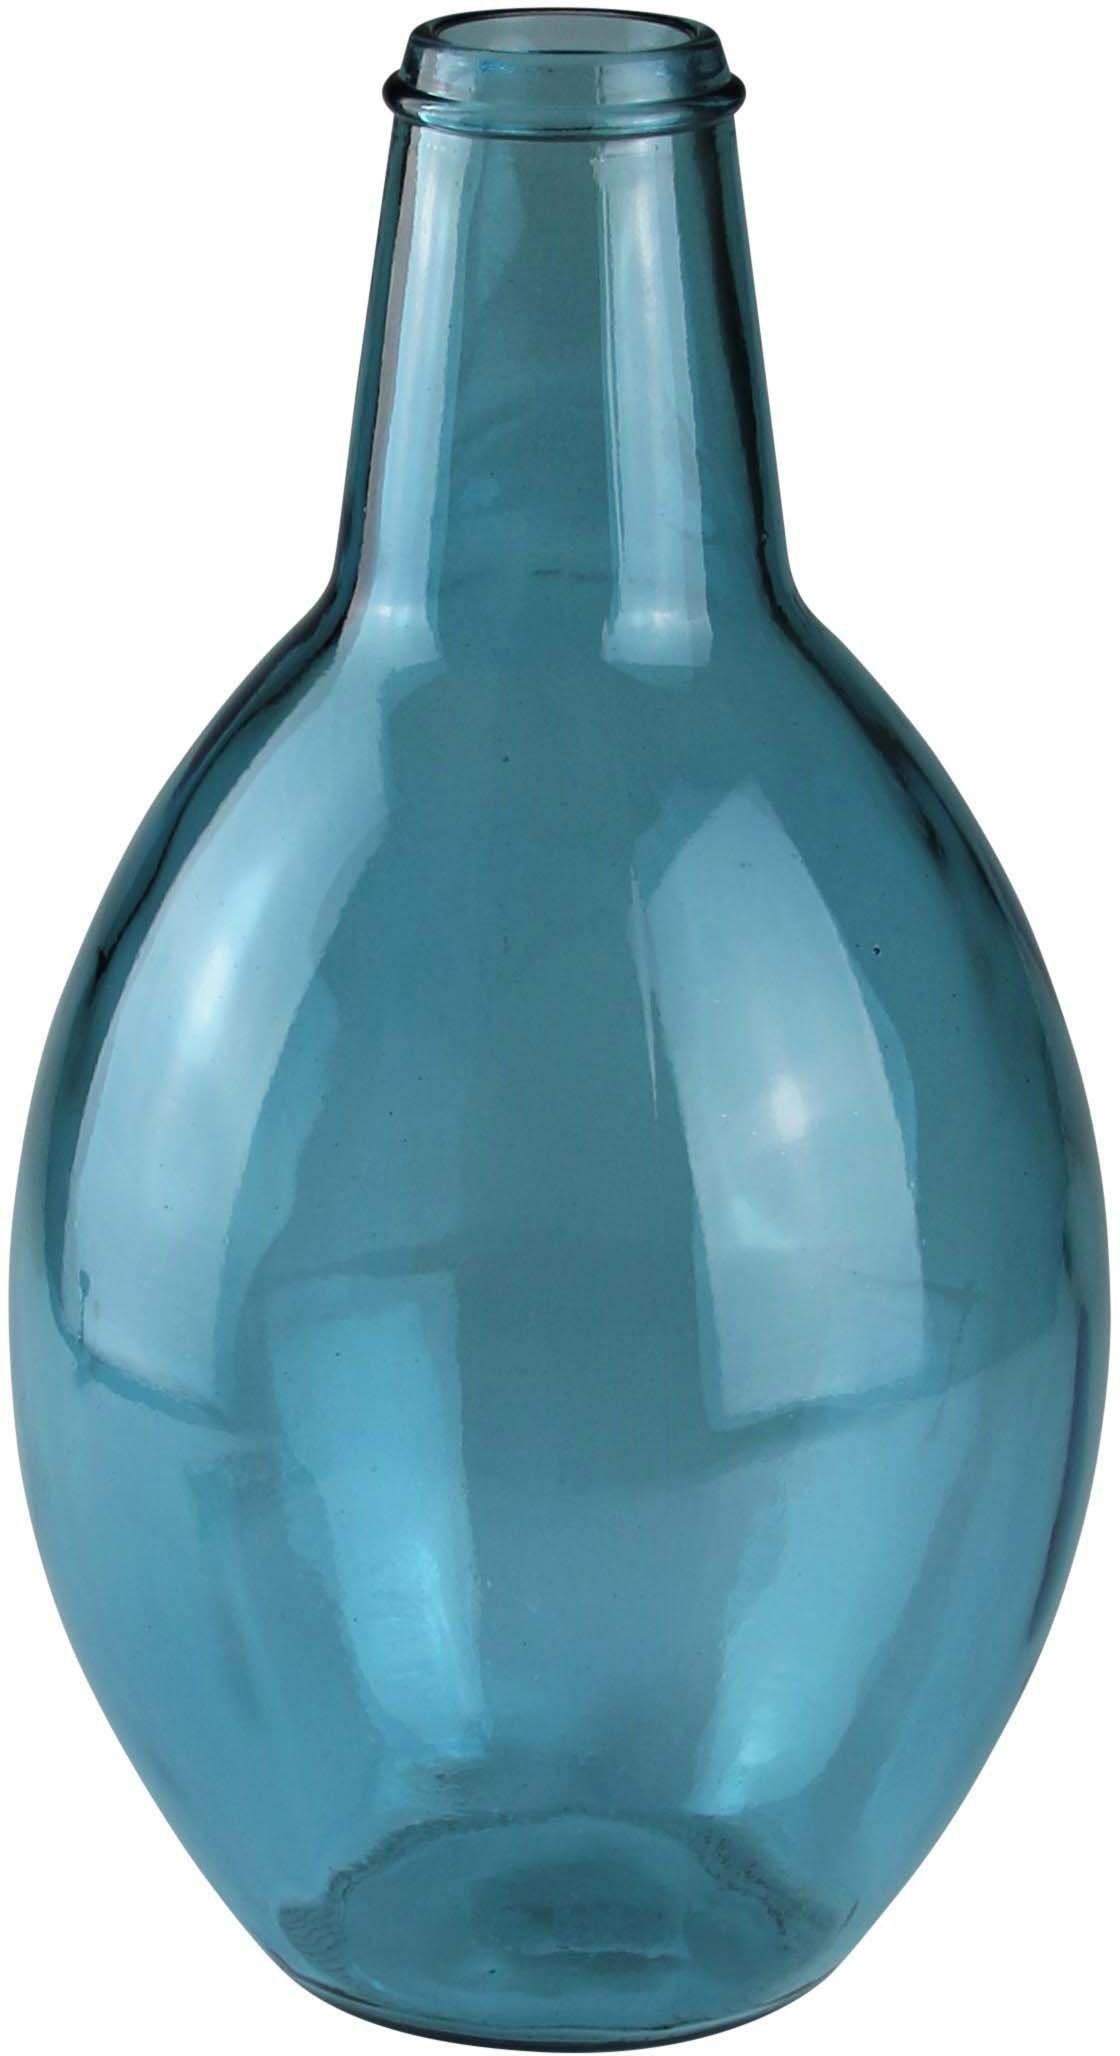 AM Design mundgelasen, Bodenvase, 38 cm Höhe blau